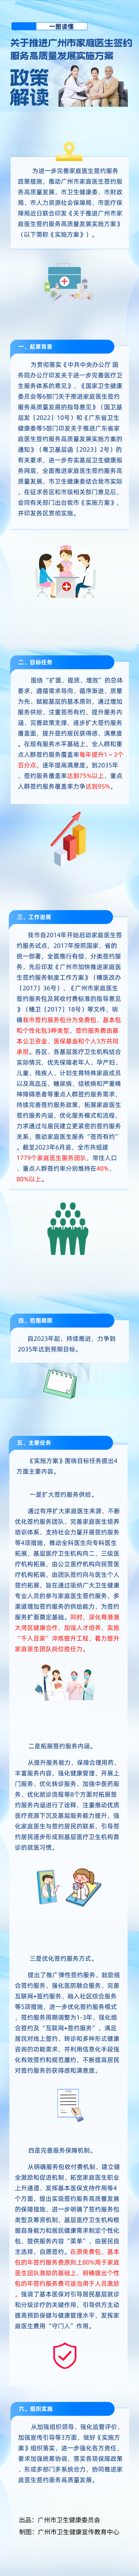 关于推进广州市家庭医生签约服务高质量发展的实施方案 政策解读(图片)(1).jpg